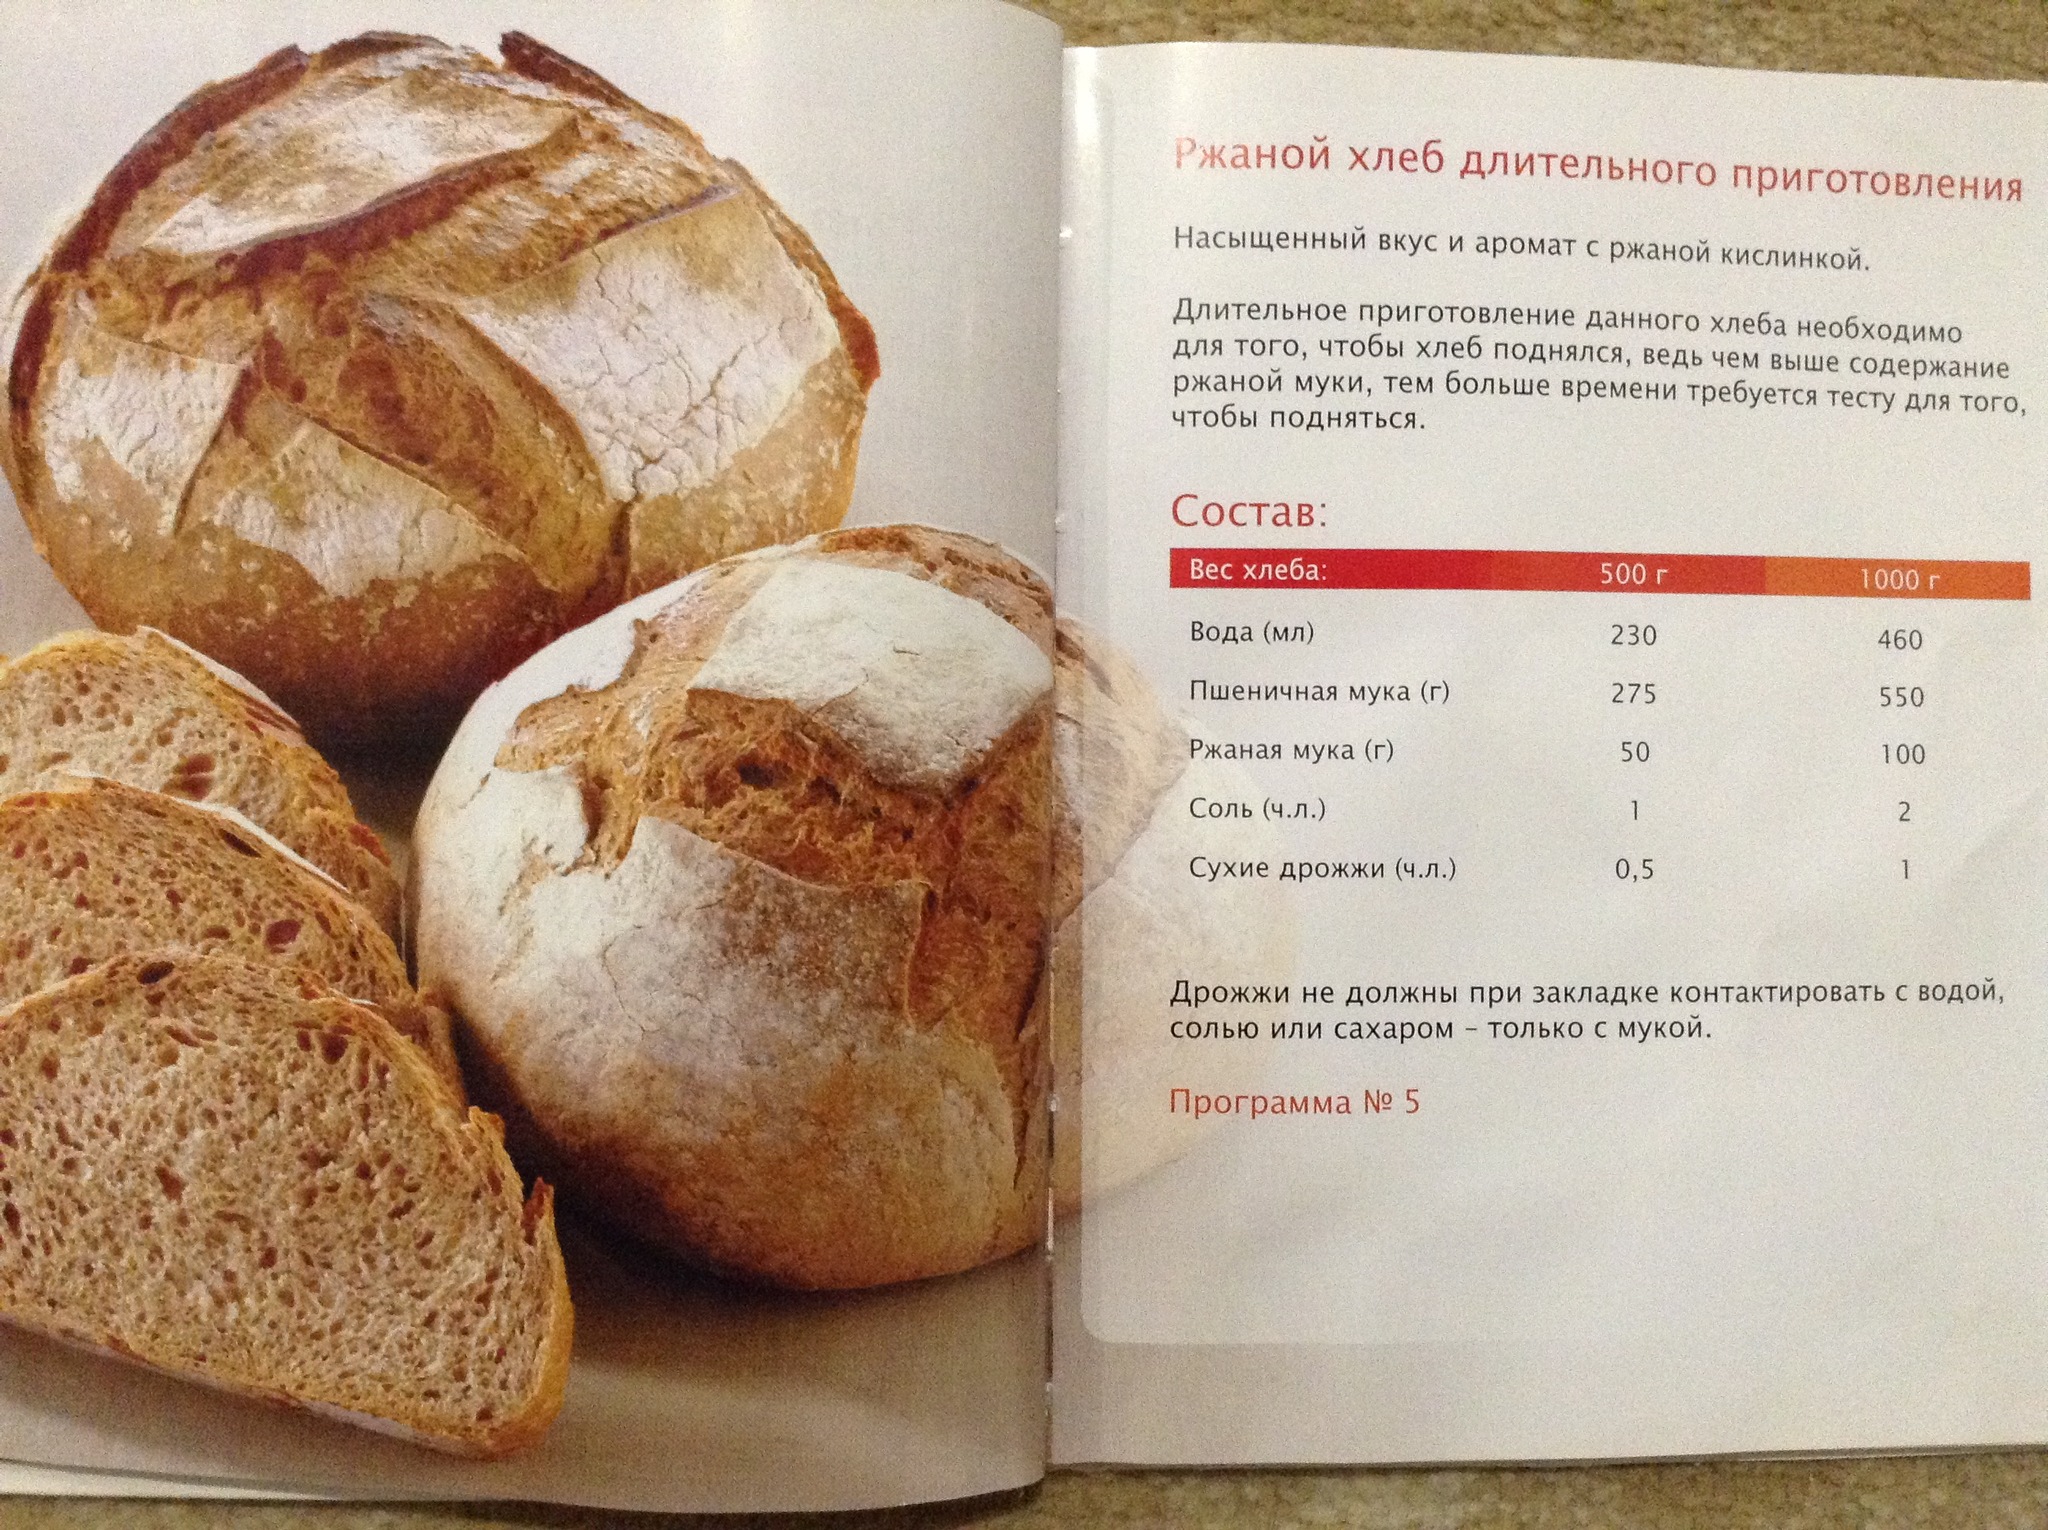 Рецепт теста для хлеба на дрожжах. Хлебопечка Мулинекс ржаной хлеб 750. Рецептура приготовления хлеба. Рецепт хлебобулочных изделий. Рецепт ржаного хлеба в хлебопечке.